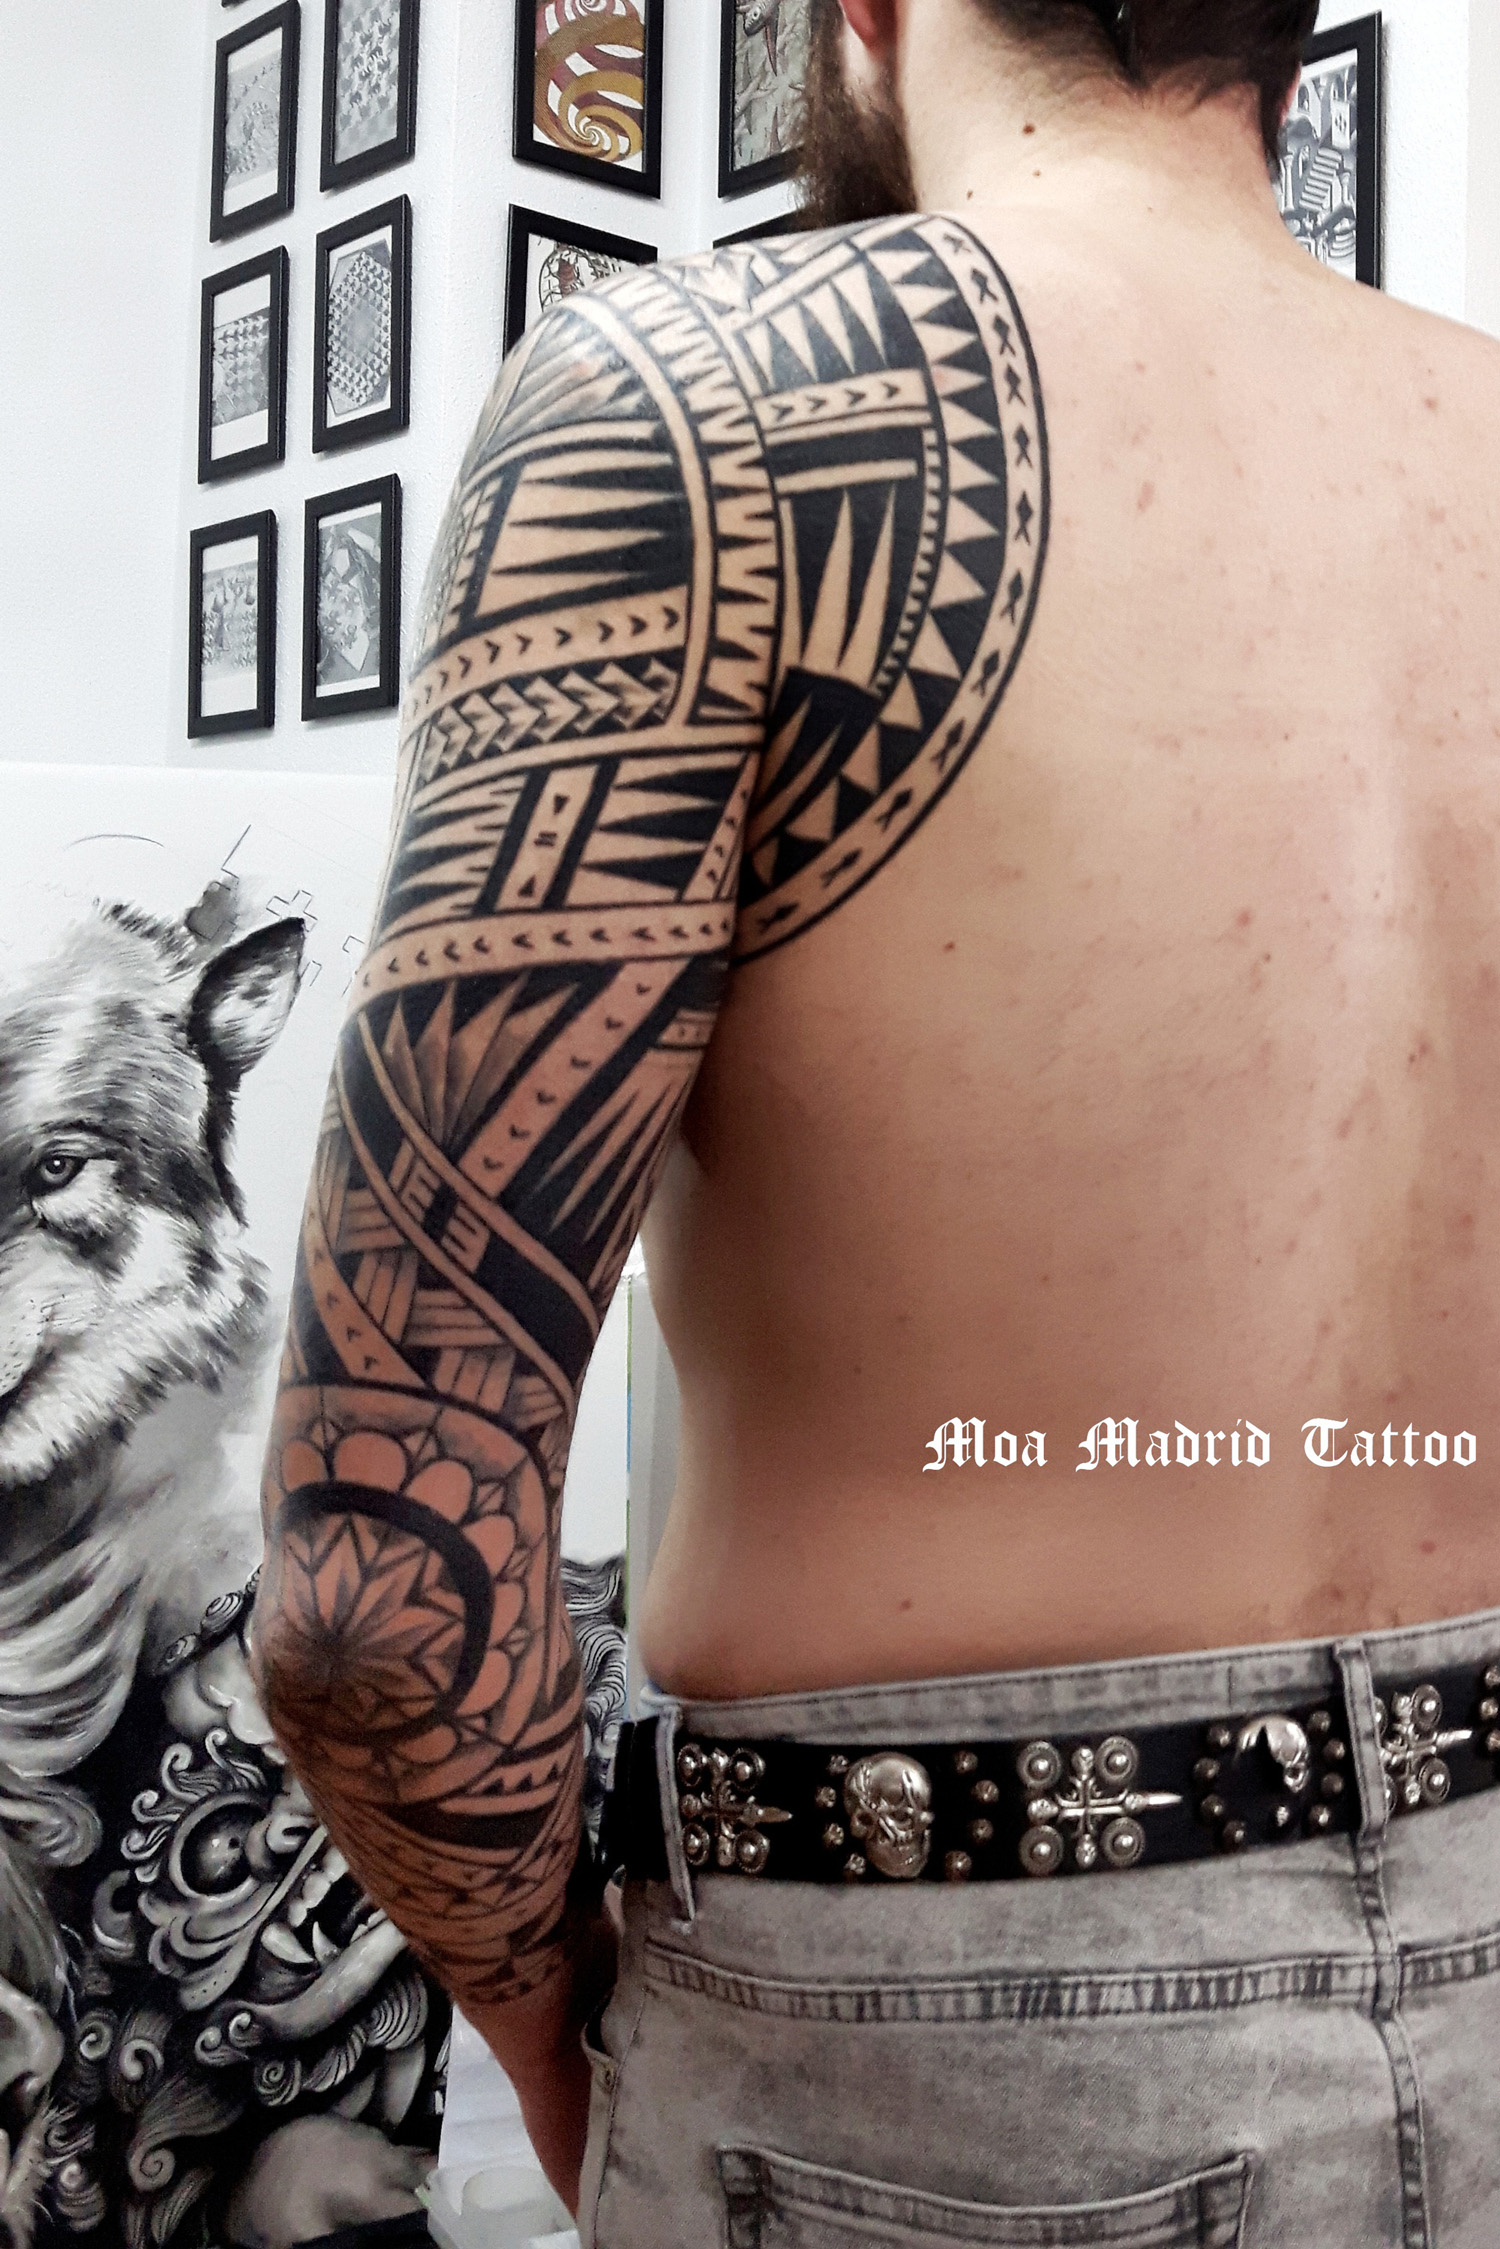 Tatuaje maorí en todo el brazo y pectoral Moa Madrid Tattoo